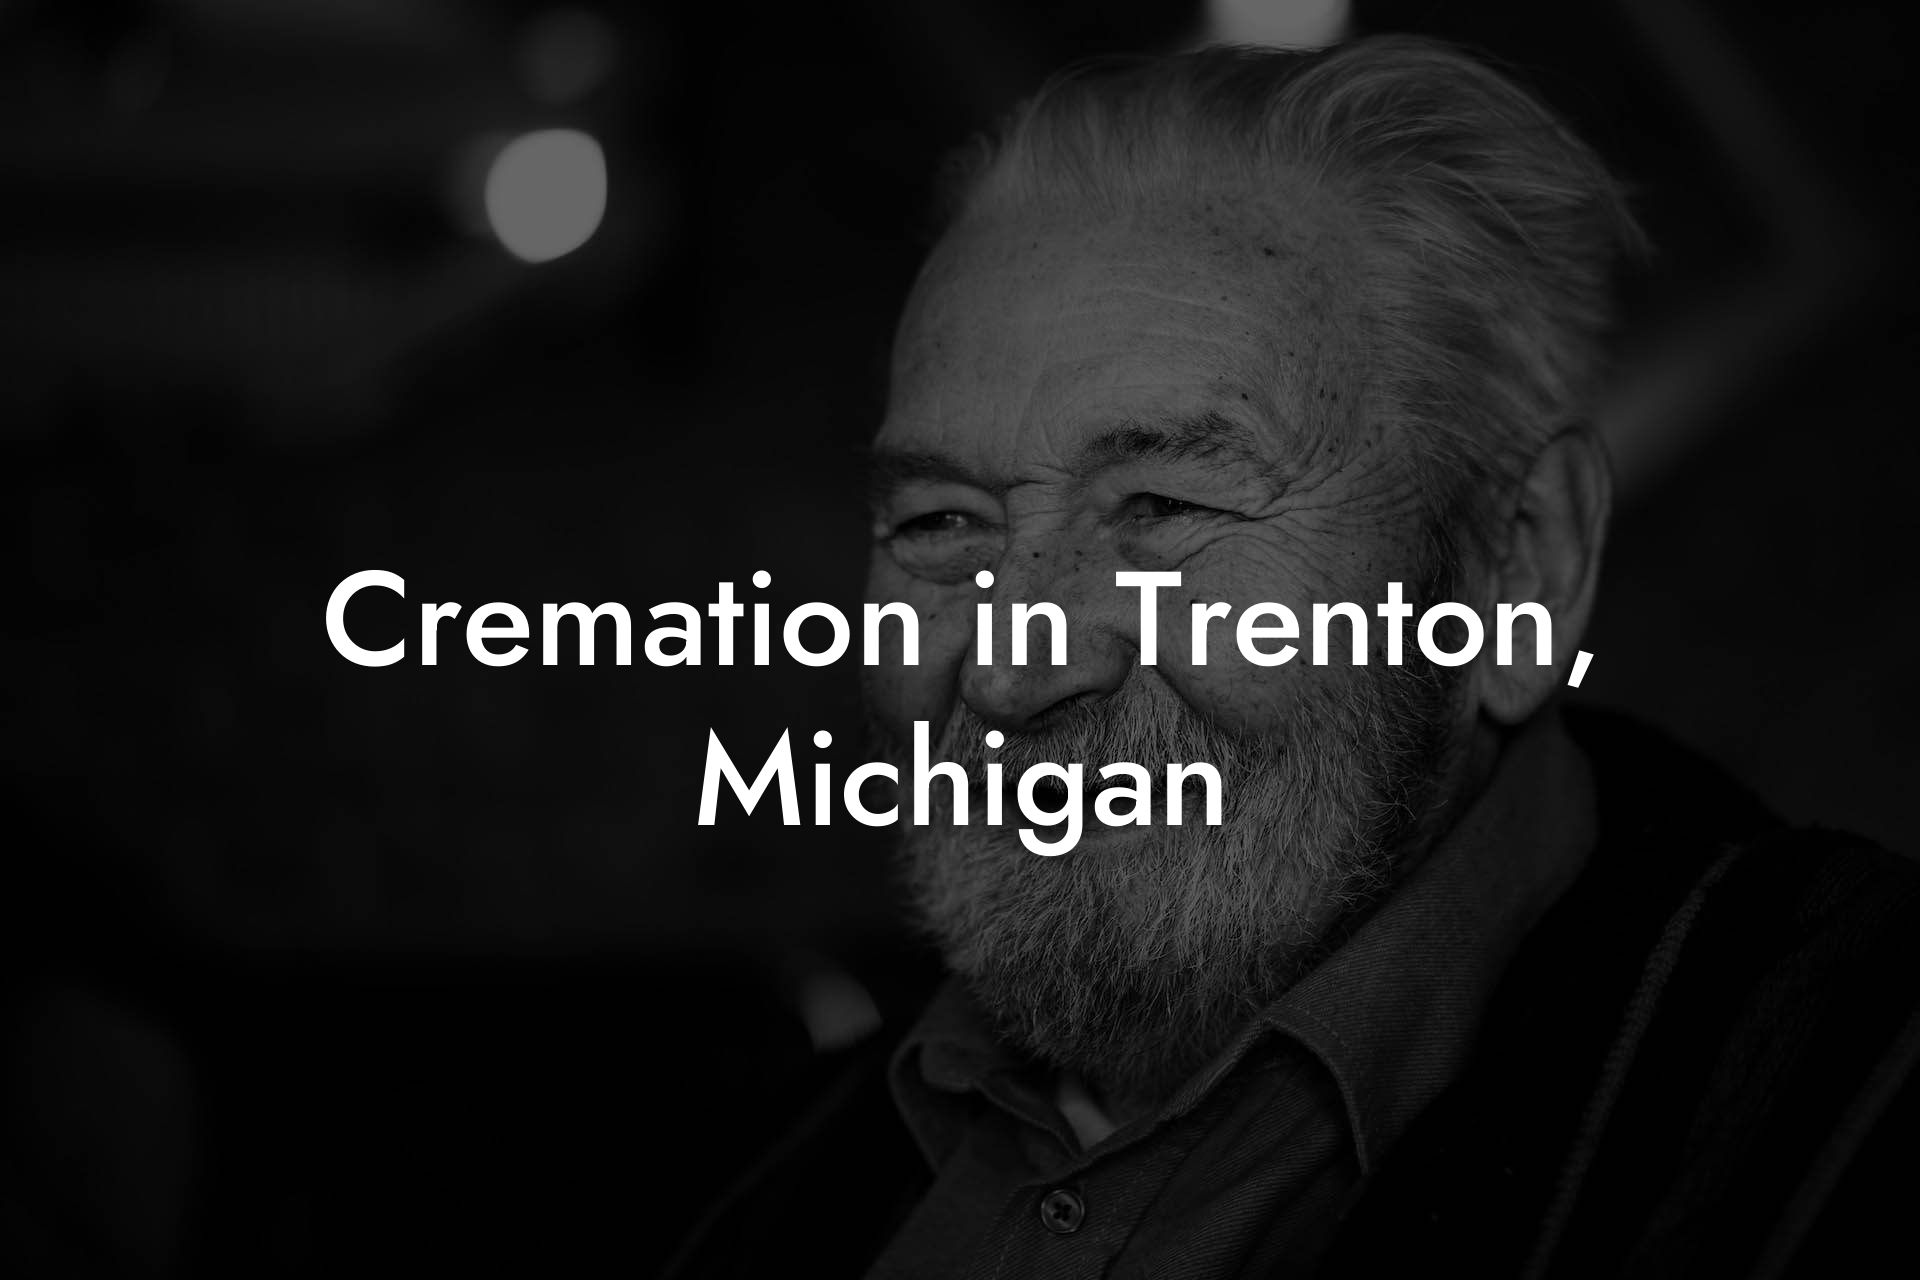 Cremation in Trenton, Michigan